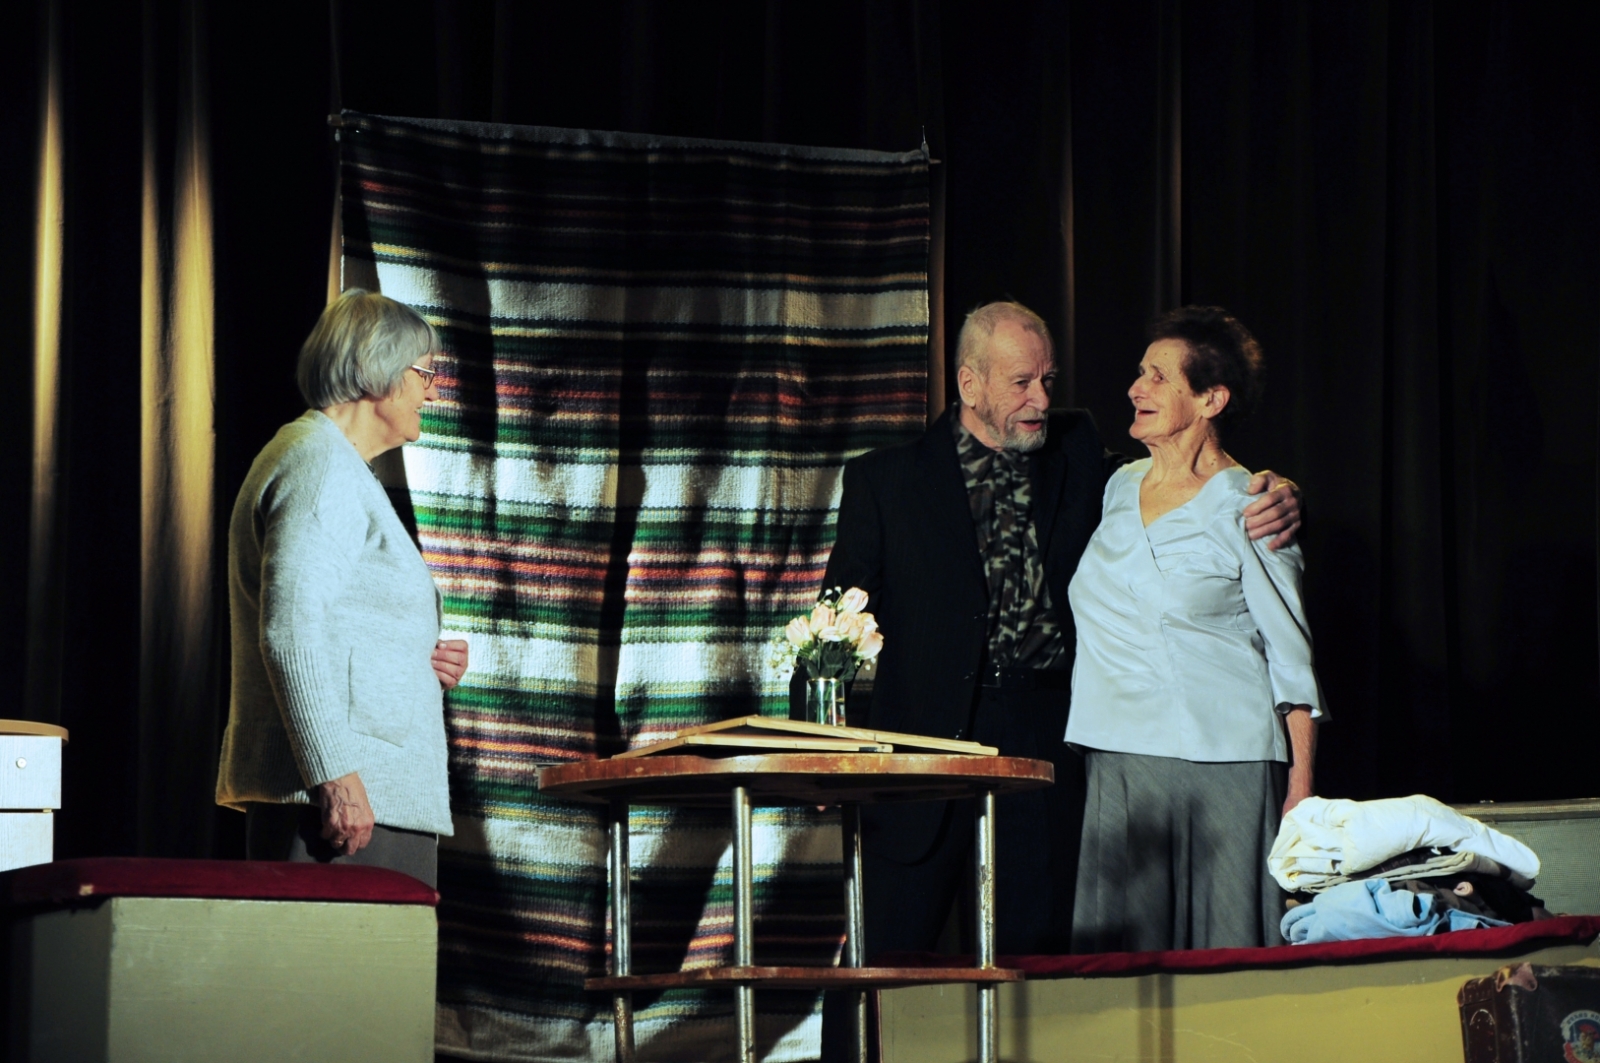 Lielvārdes pensionāru biedrības teātris “Paši” (režisore Skaidrīte Tilaka) ar Ineses Tālmanes izrādi “Vecus kokus nepārstāda”